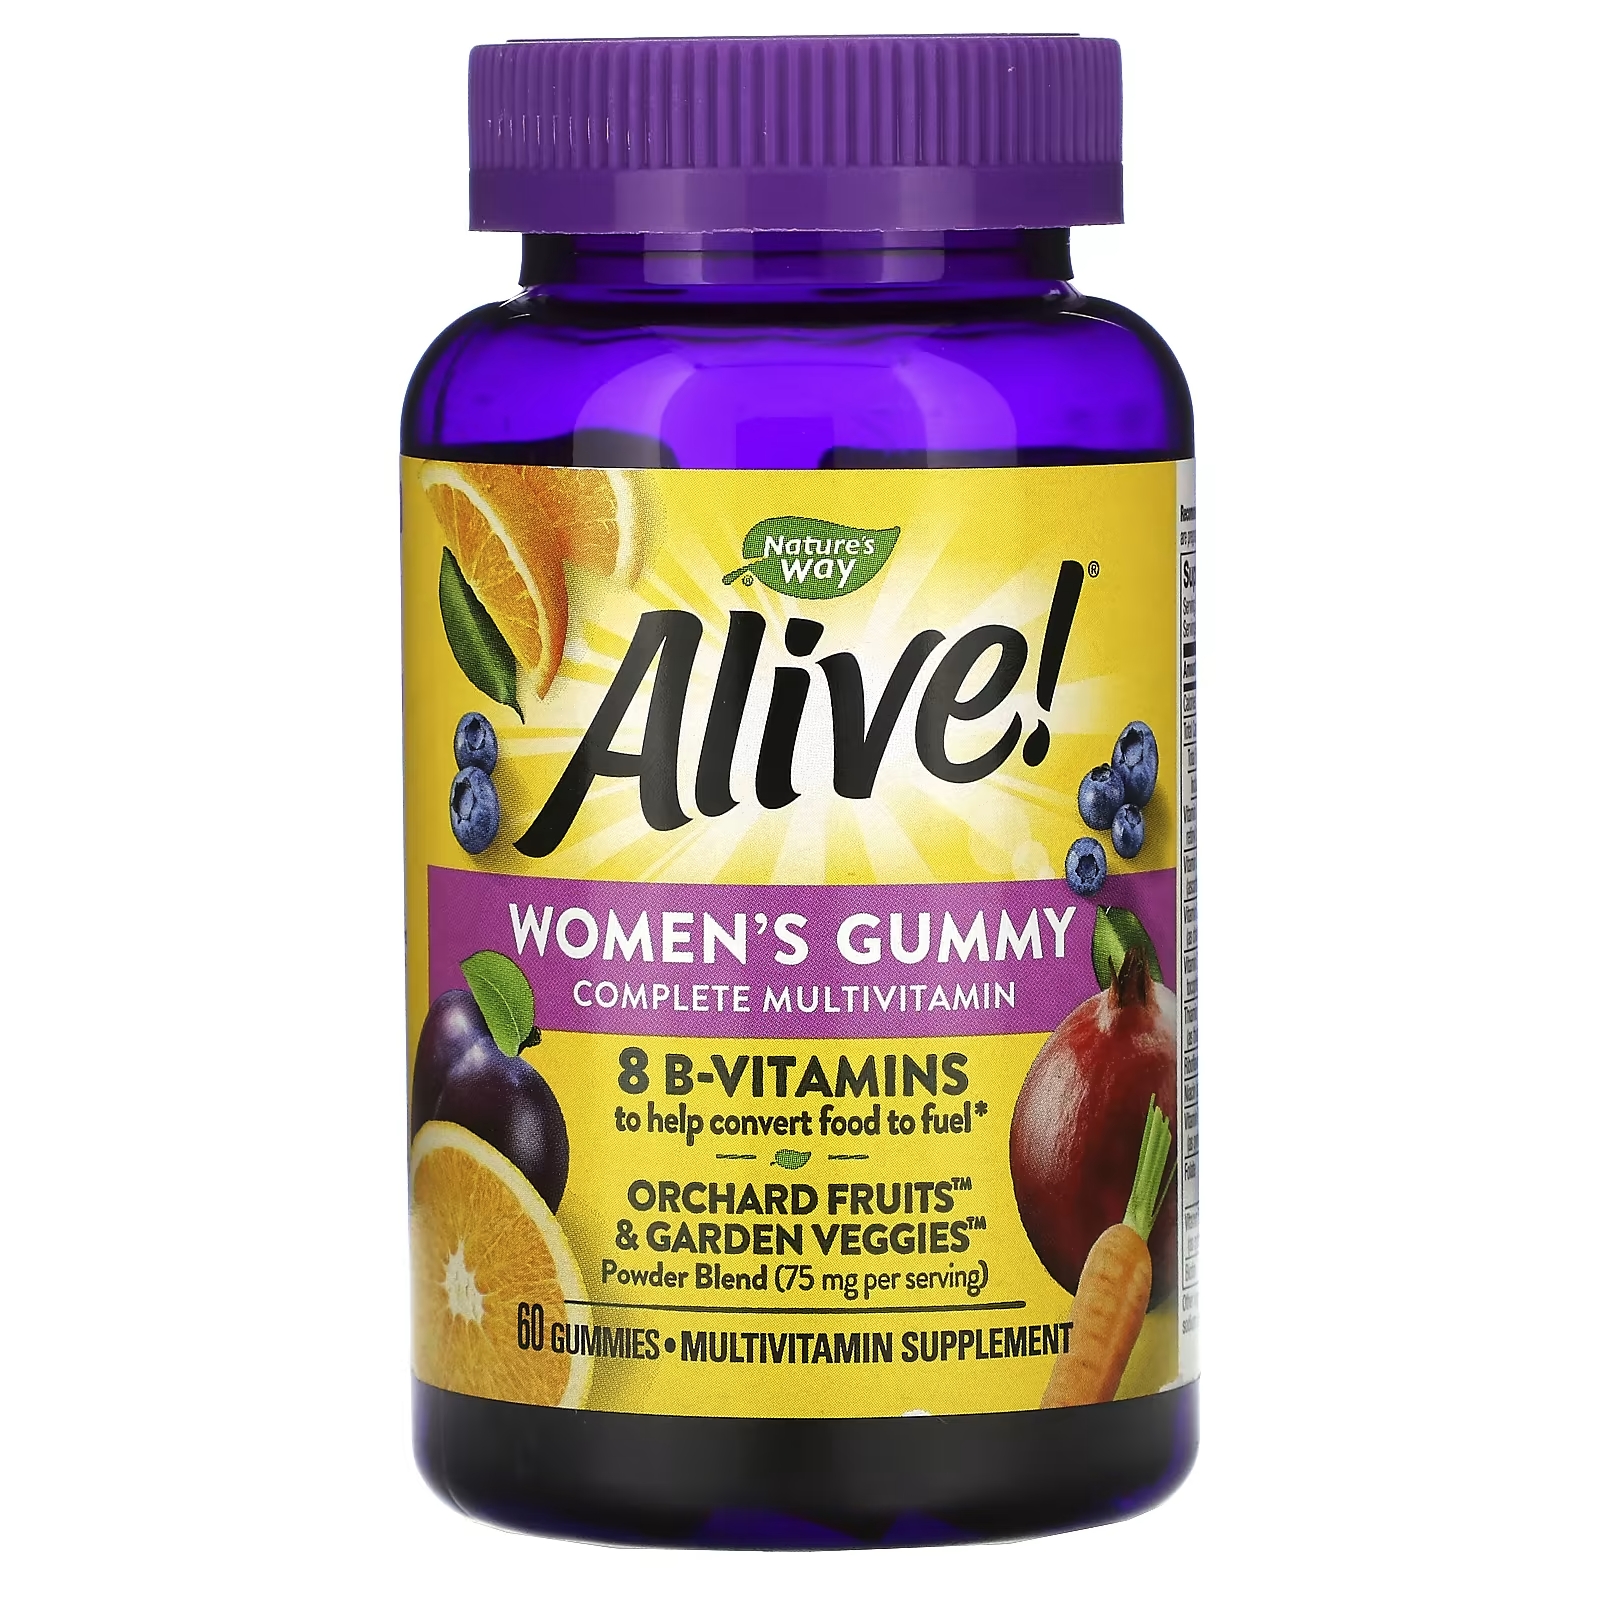 Мультивитаминный Комплекс для Женщин Nature's Way Alive, ягодный вкус, 60 жевательных таблеток nature s way alive мультивитамины для женщин от 50 лет ягодный микс 130 жевательных таблеток